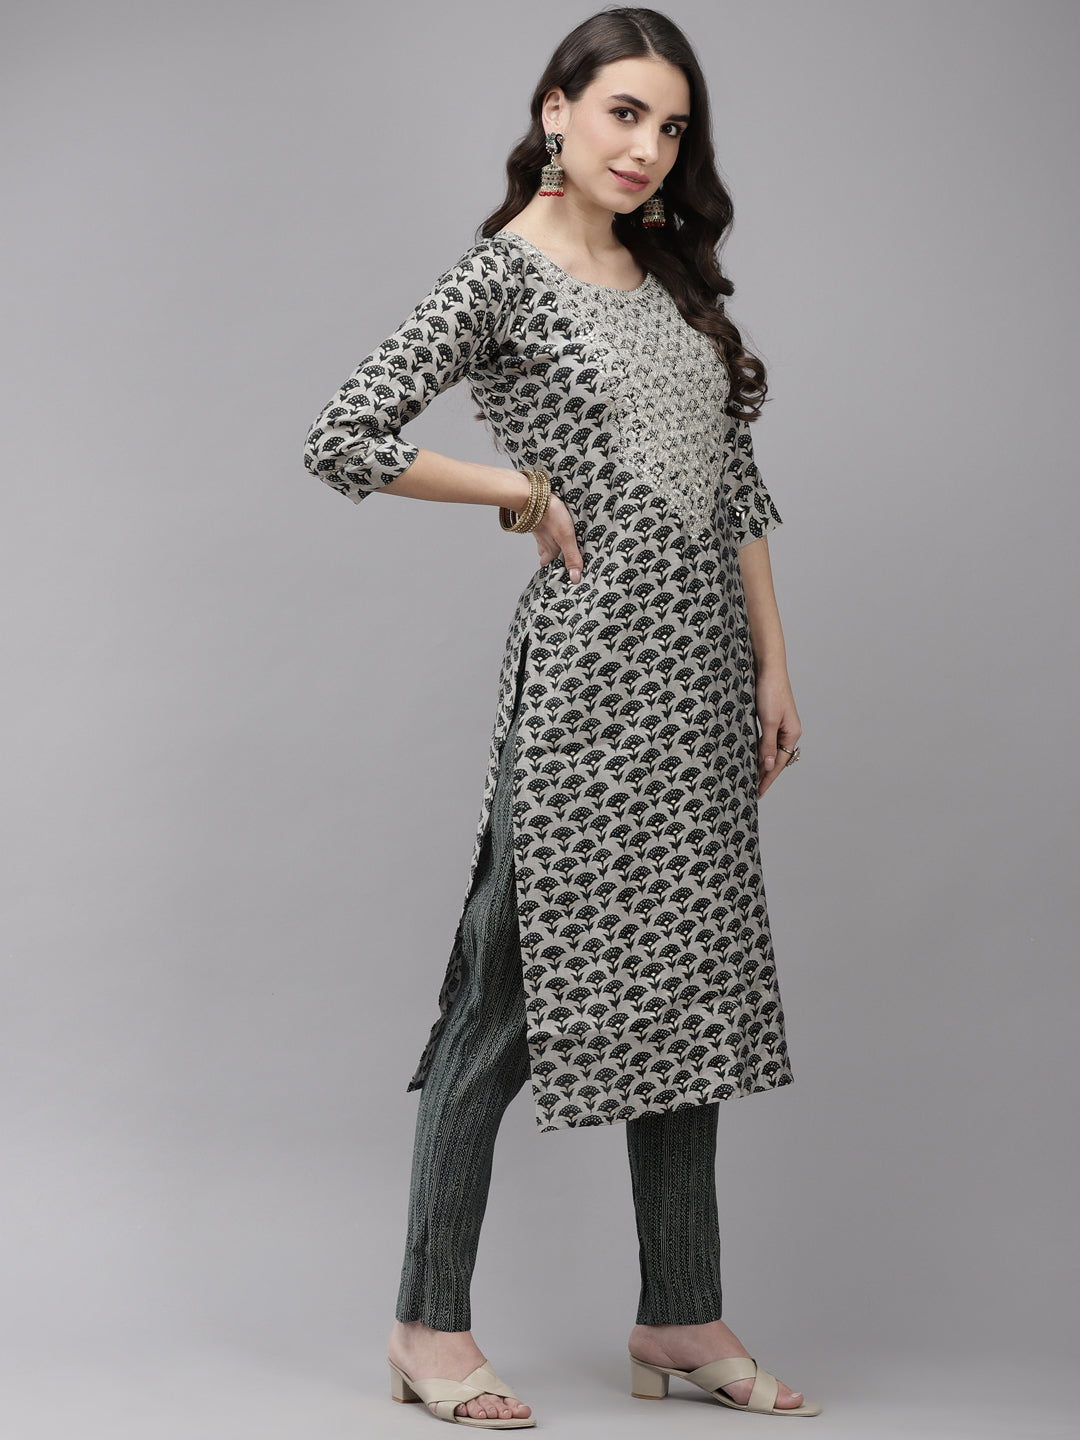 Ishin Women's Silk Blend Grey & Green Embroidered A-Line Kurta Trouser Dupatta Set